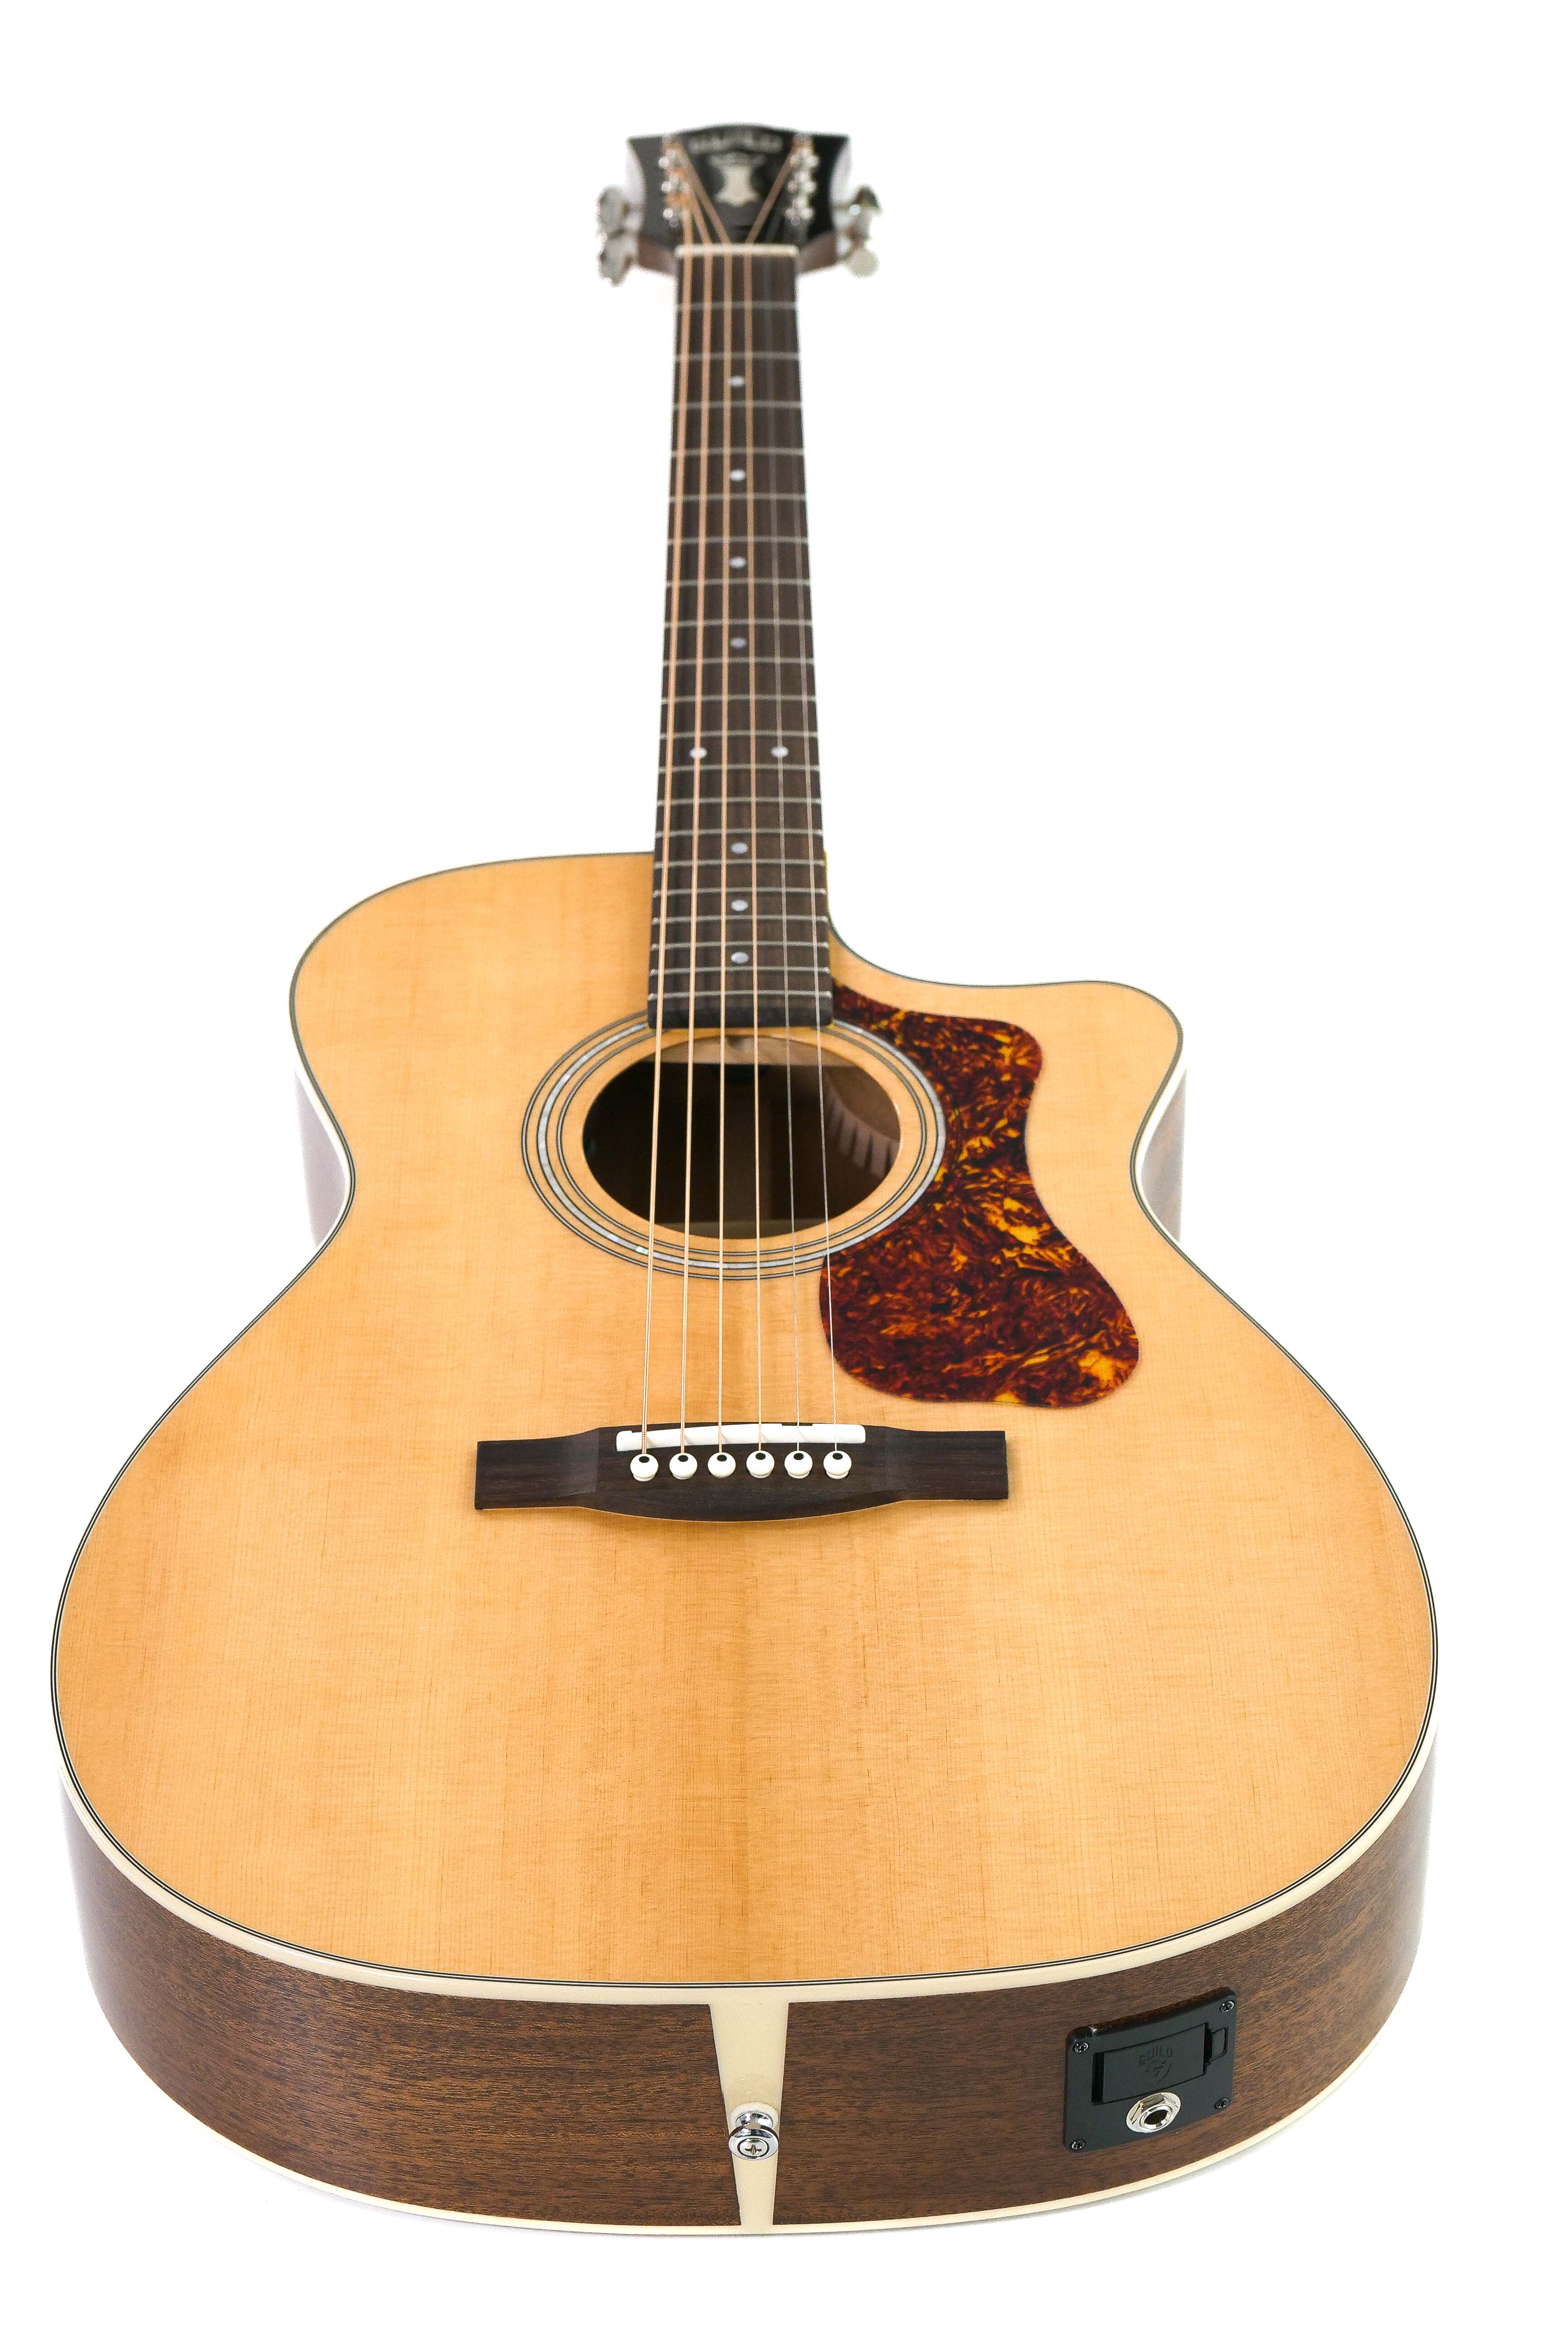 Guild OM-140CE Acoustic Guitar - Natural 